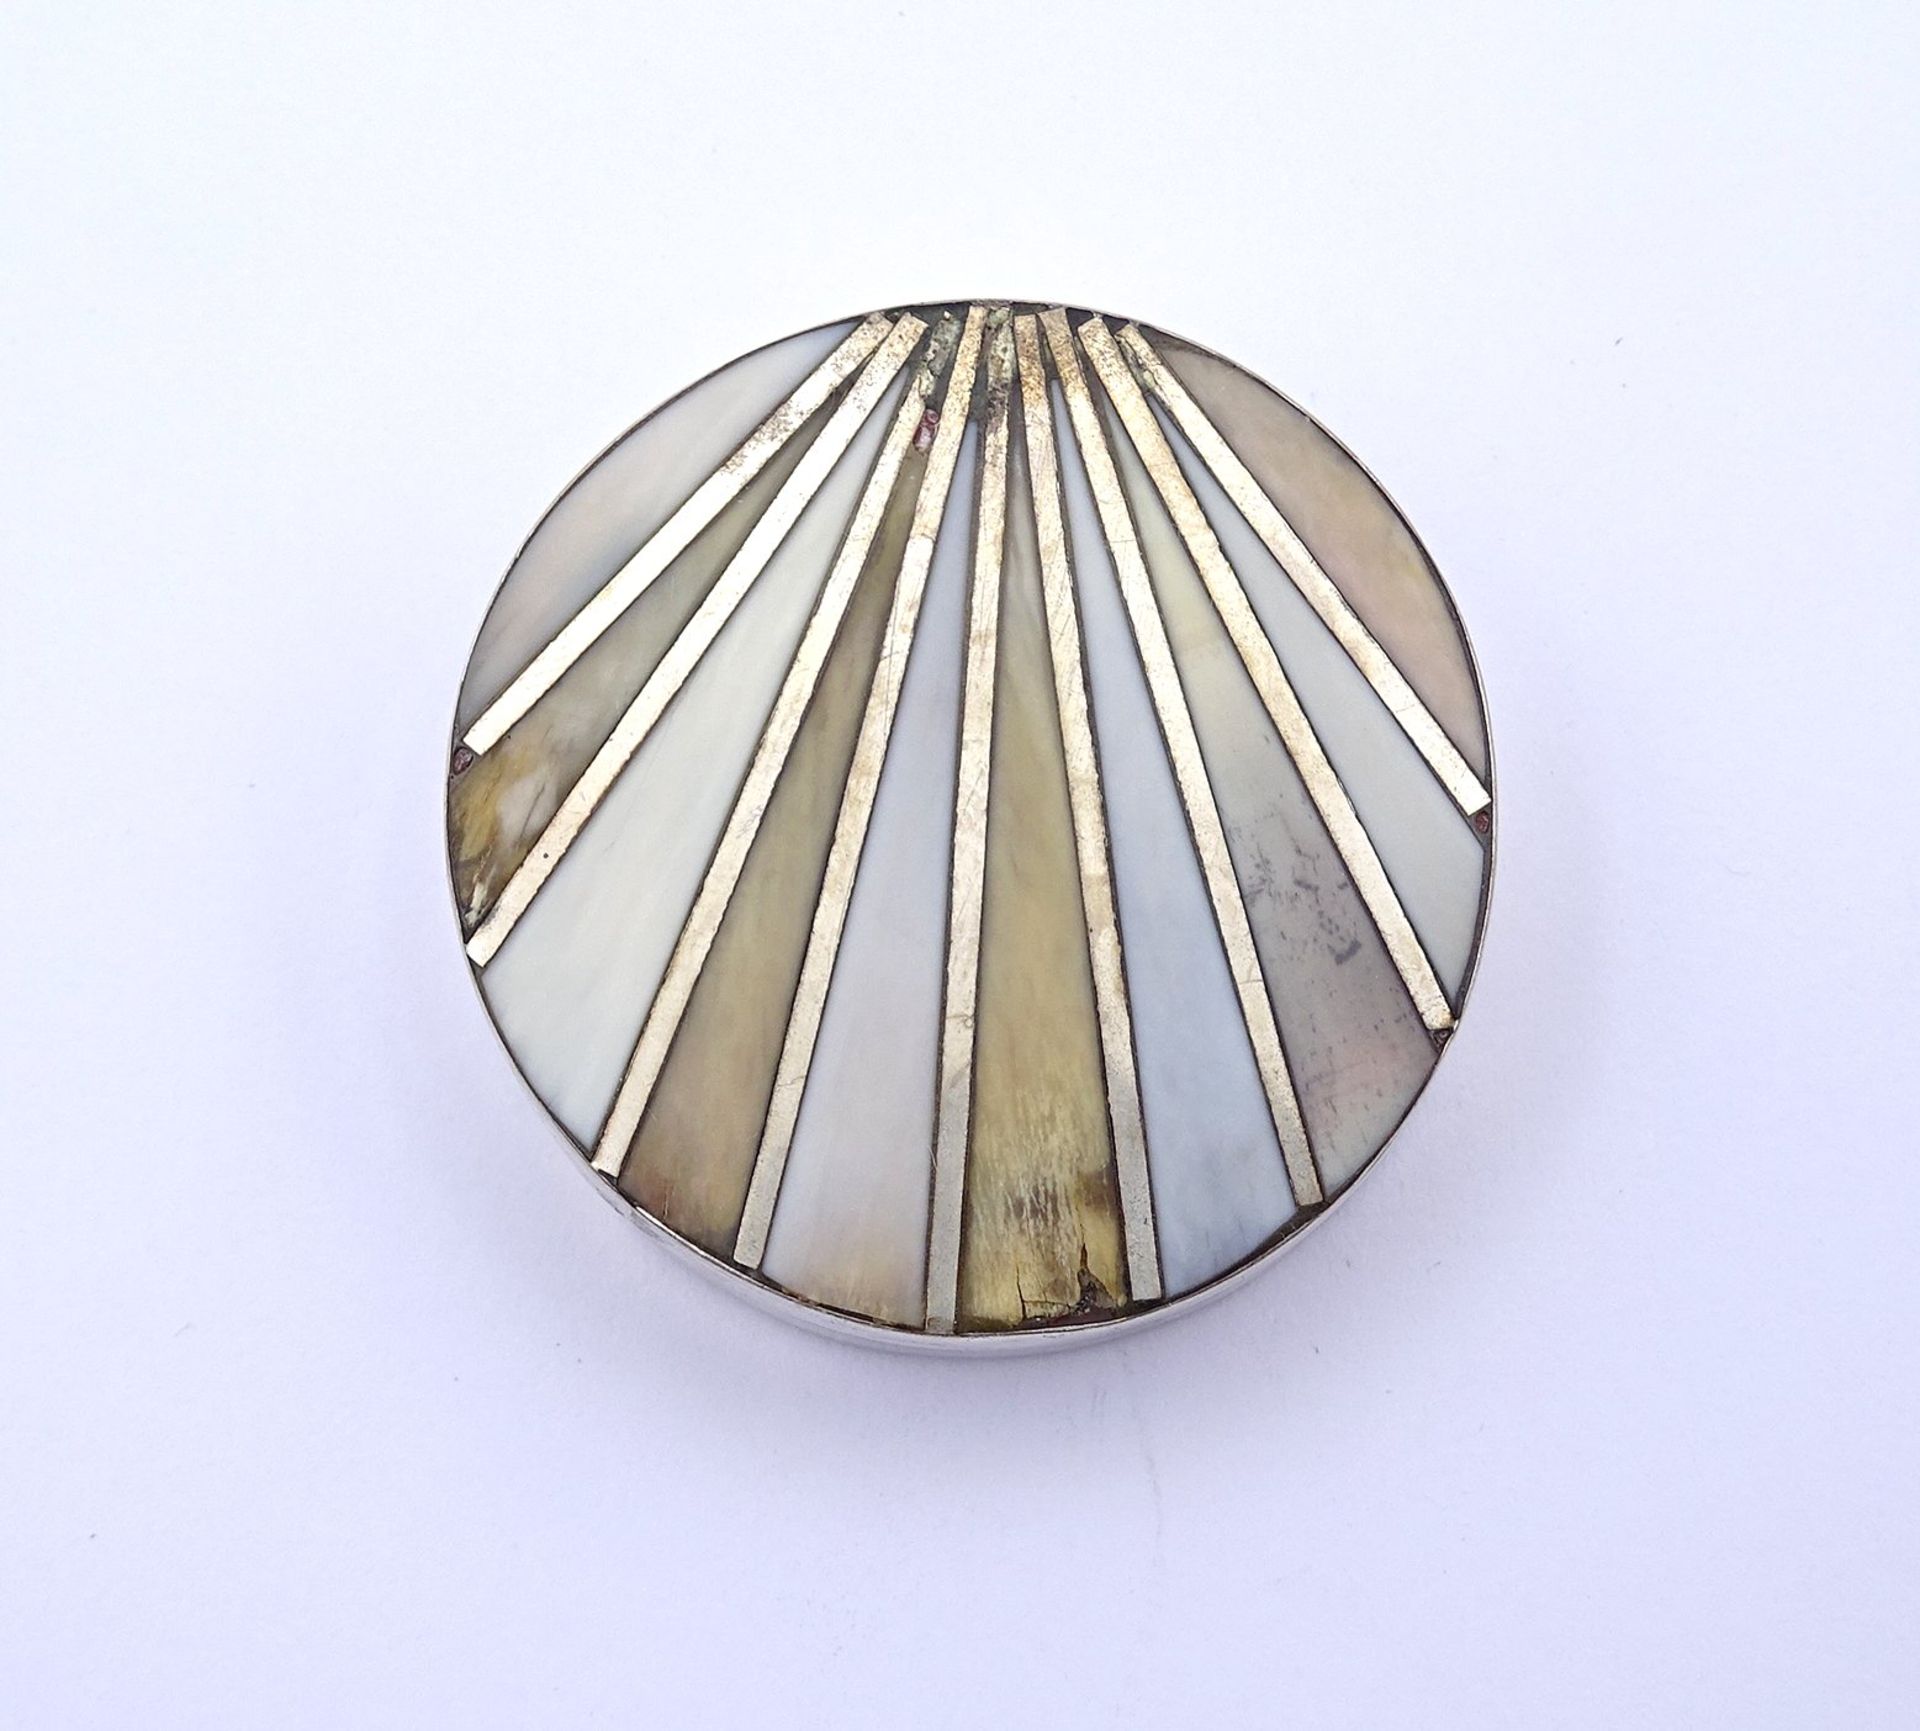 Silberne Pillendose (gepr.) mit Perlmutteinlagen, Ø 4,3 cm, H. 1,2 cm, 22 gr., mit Altersspuren, Pe